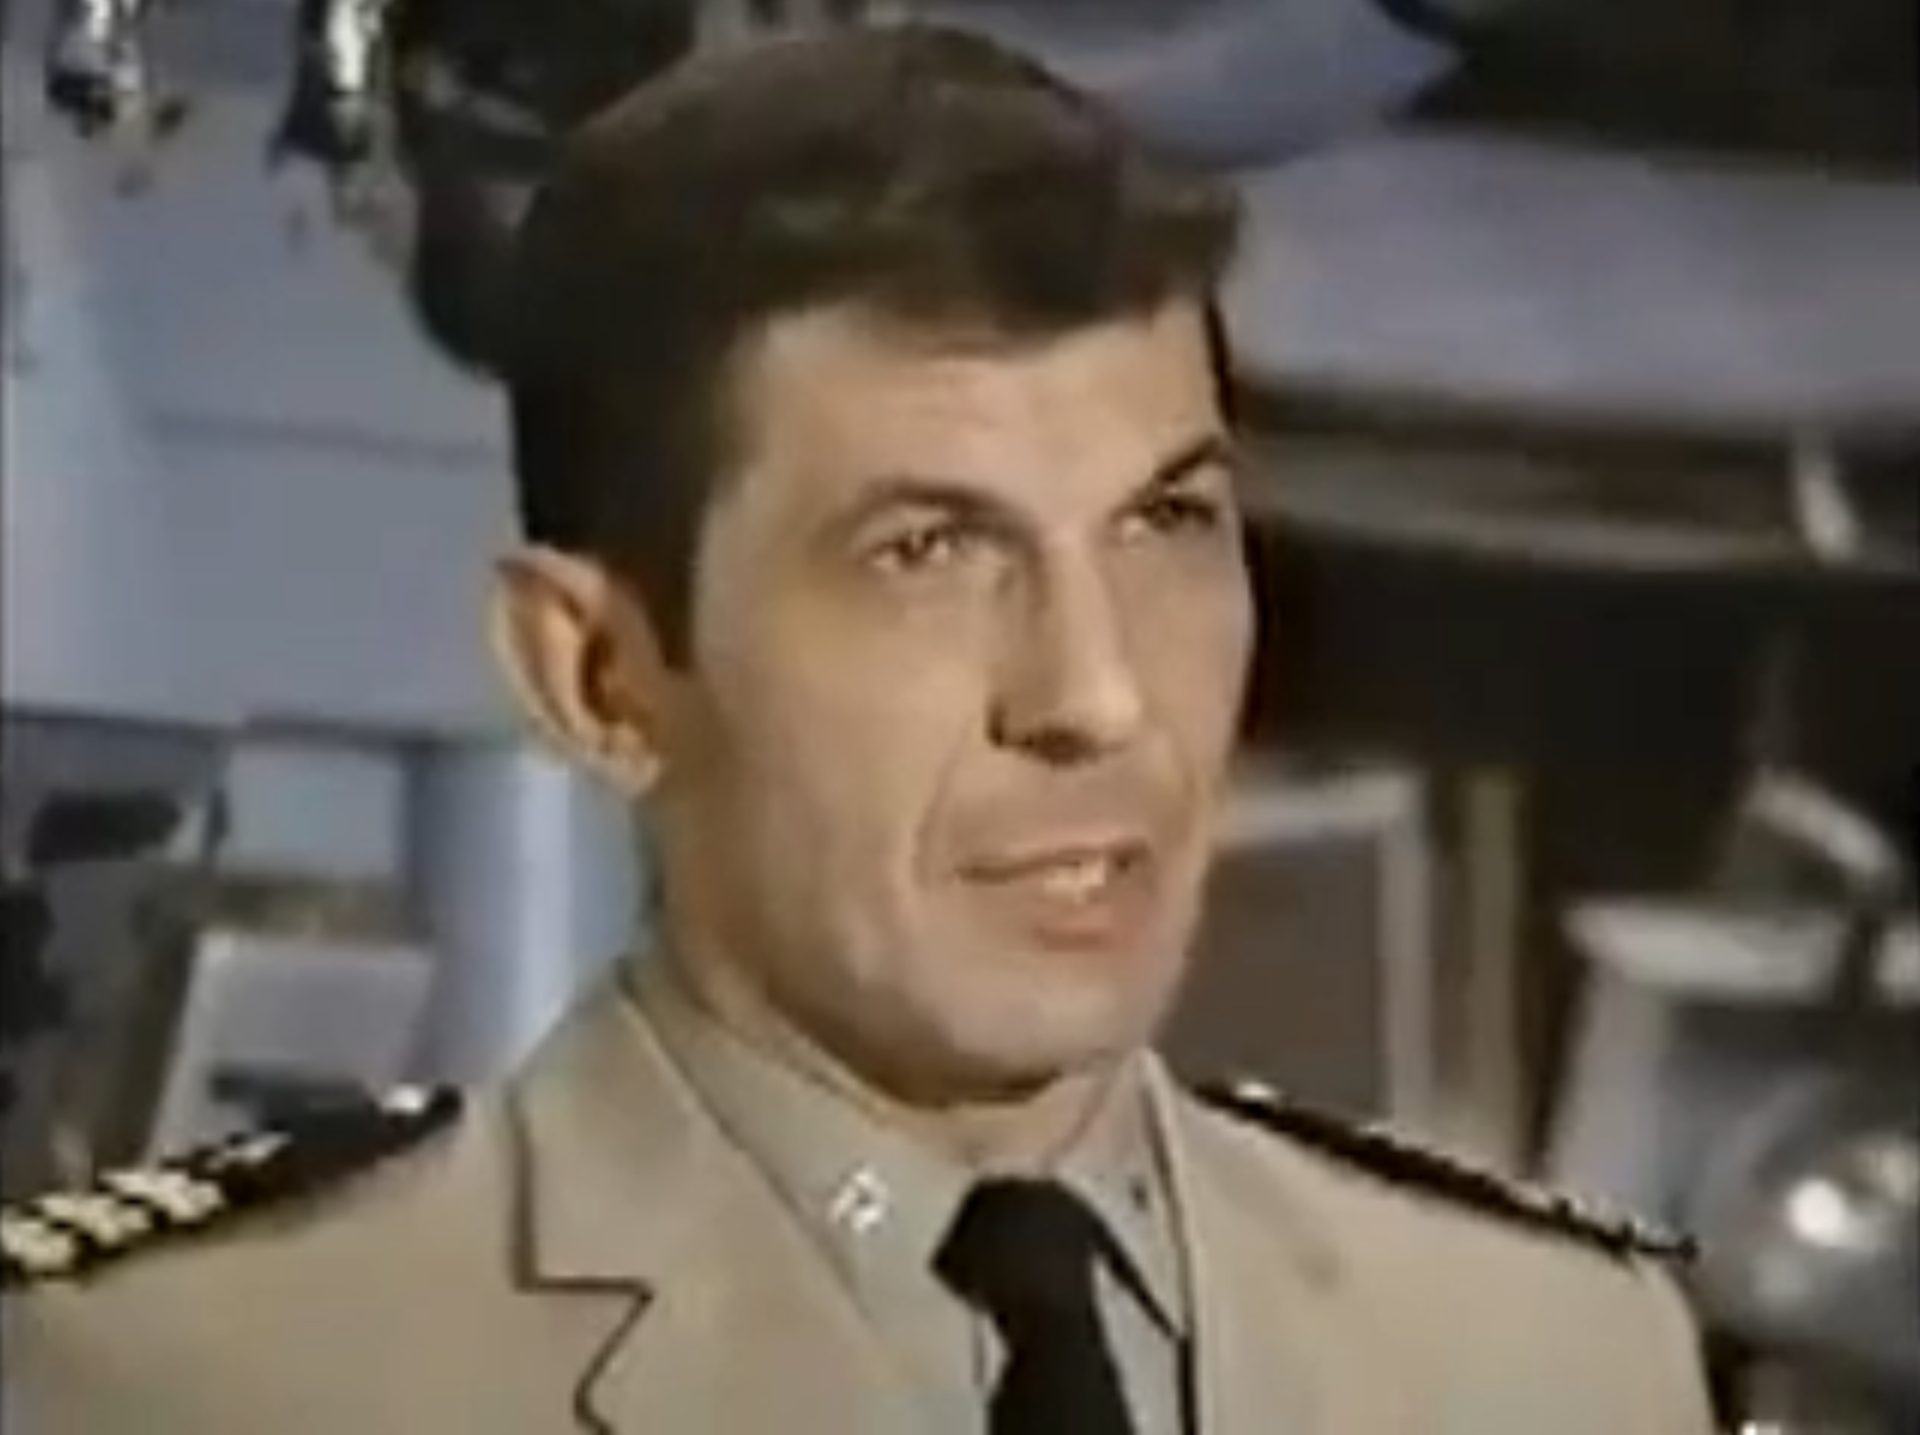 Nahaufnahme von Leonard Nimoy als Navy-U-Boot-Kapitän in Uniform mit Krawatte.